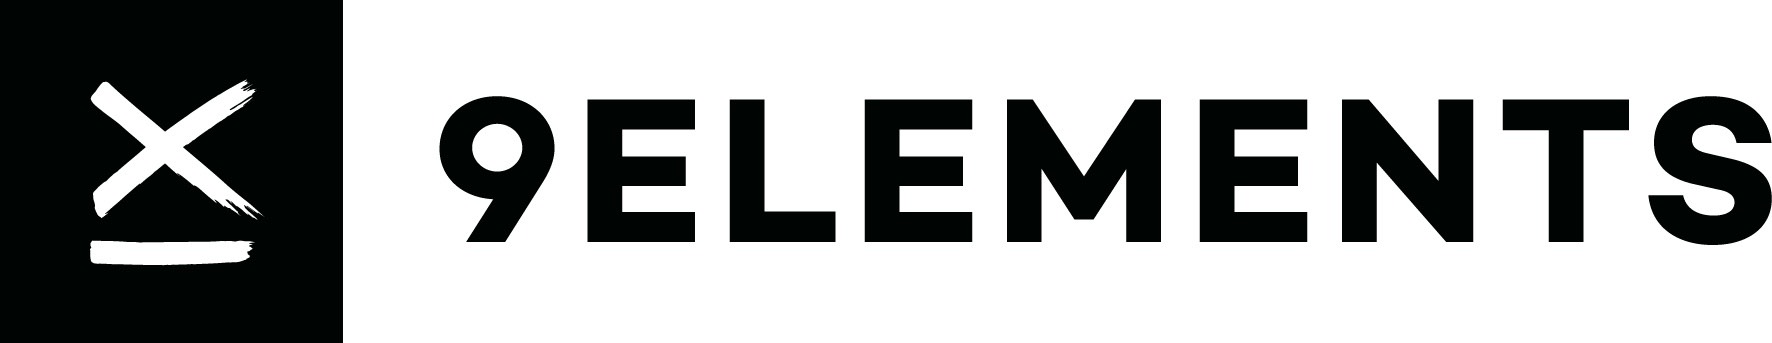 9elements logo